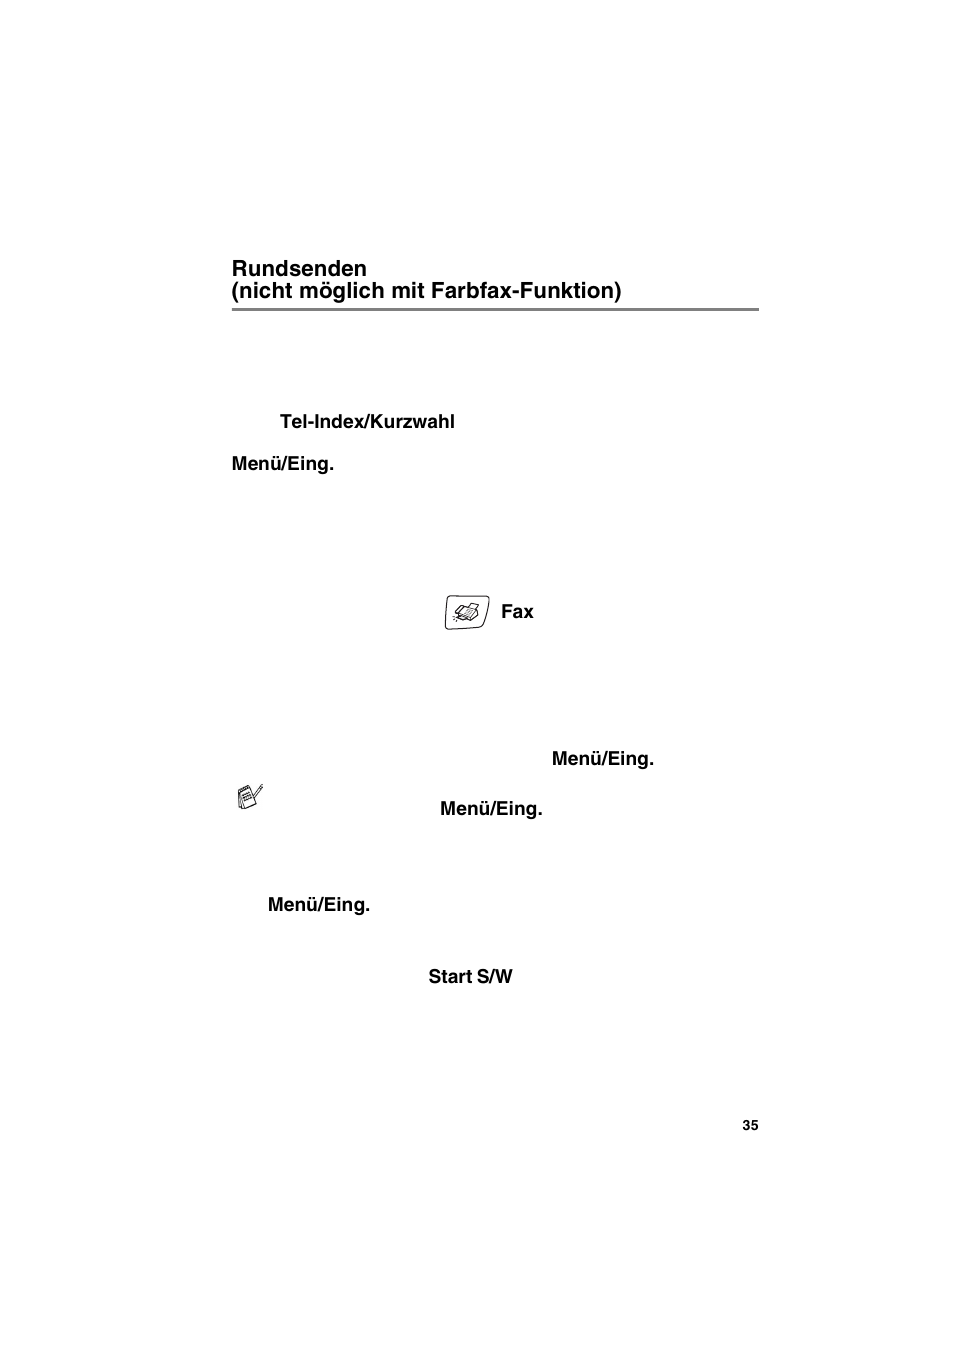 Rundsenden (nicht möglich mit farbfax-funktion) | Brother MFC 210C Benutzerhandbuch | Seite 51 / 189